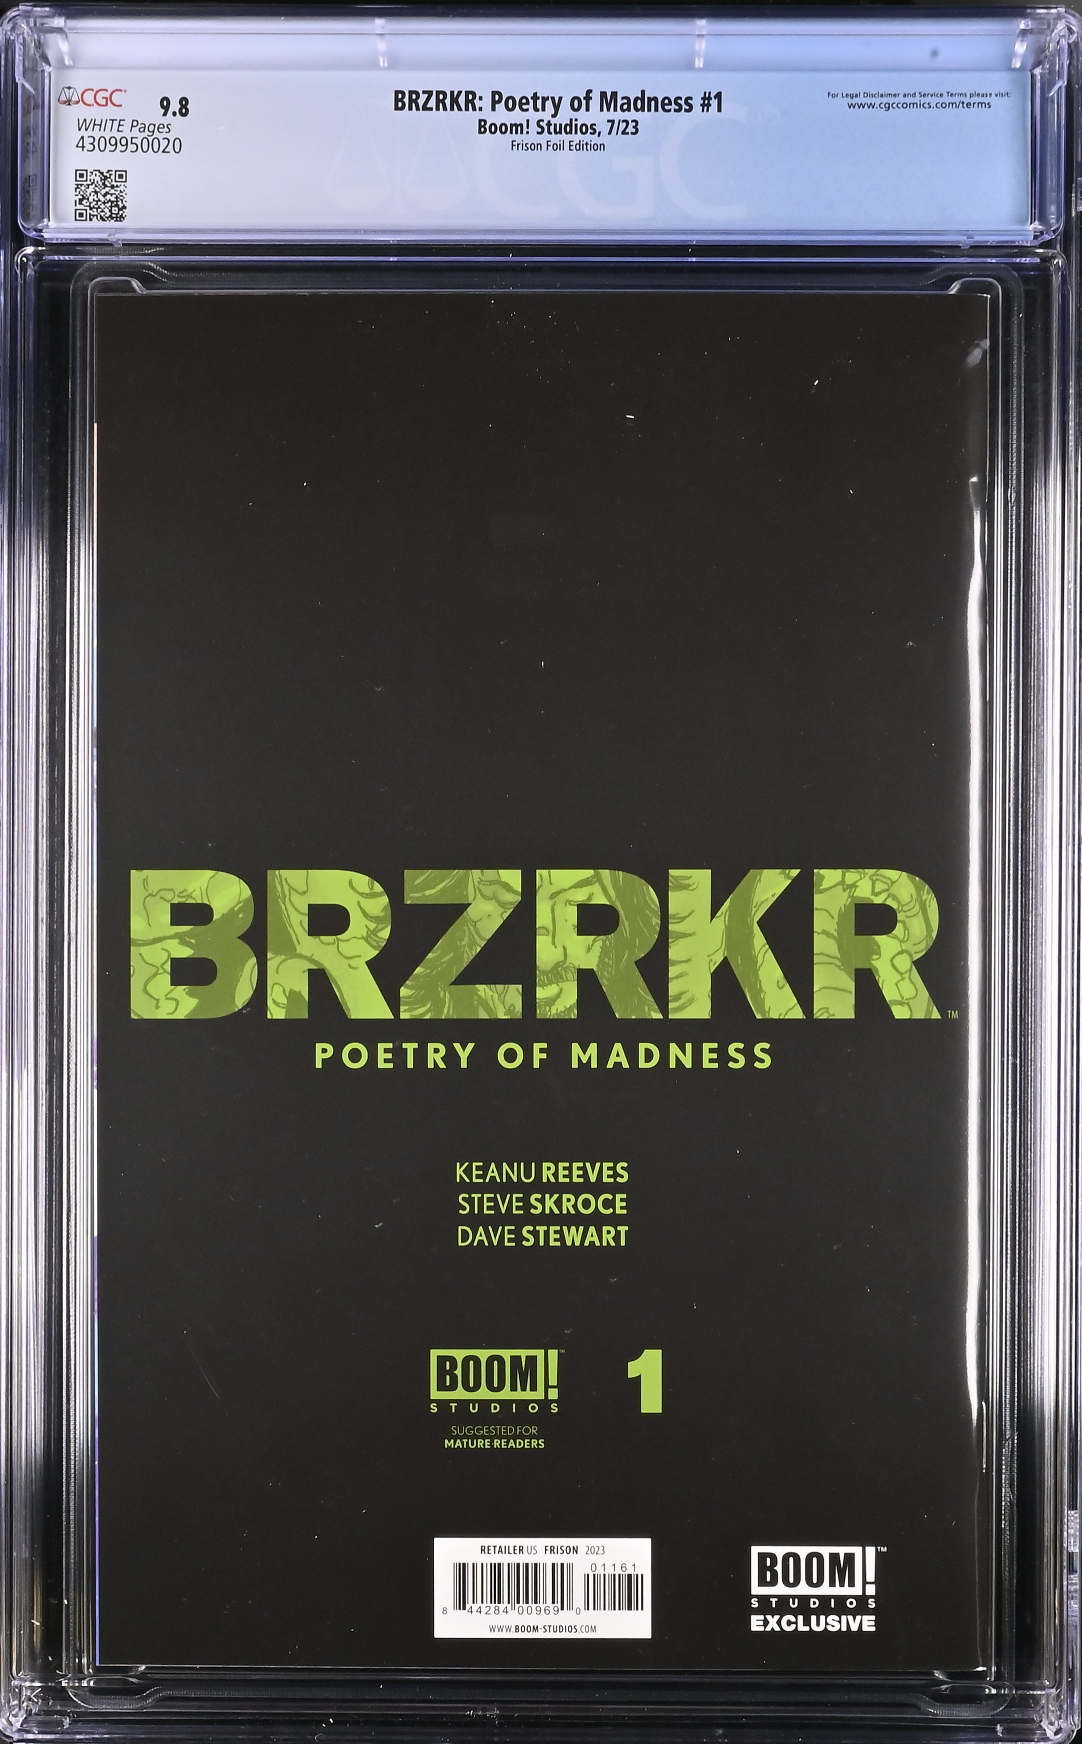 BRZRKR: Poetry of Madness #1 Frison SDCC Foil Variant CGC 9.8 (Berzerker)